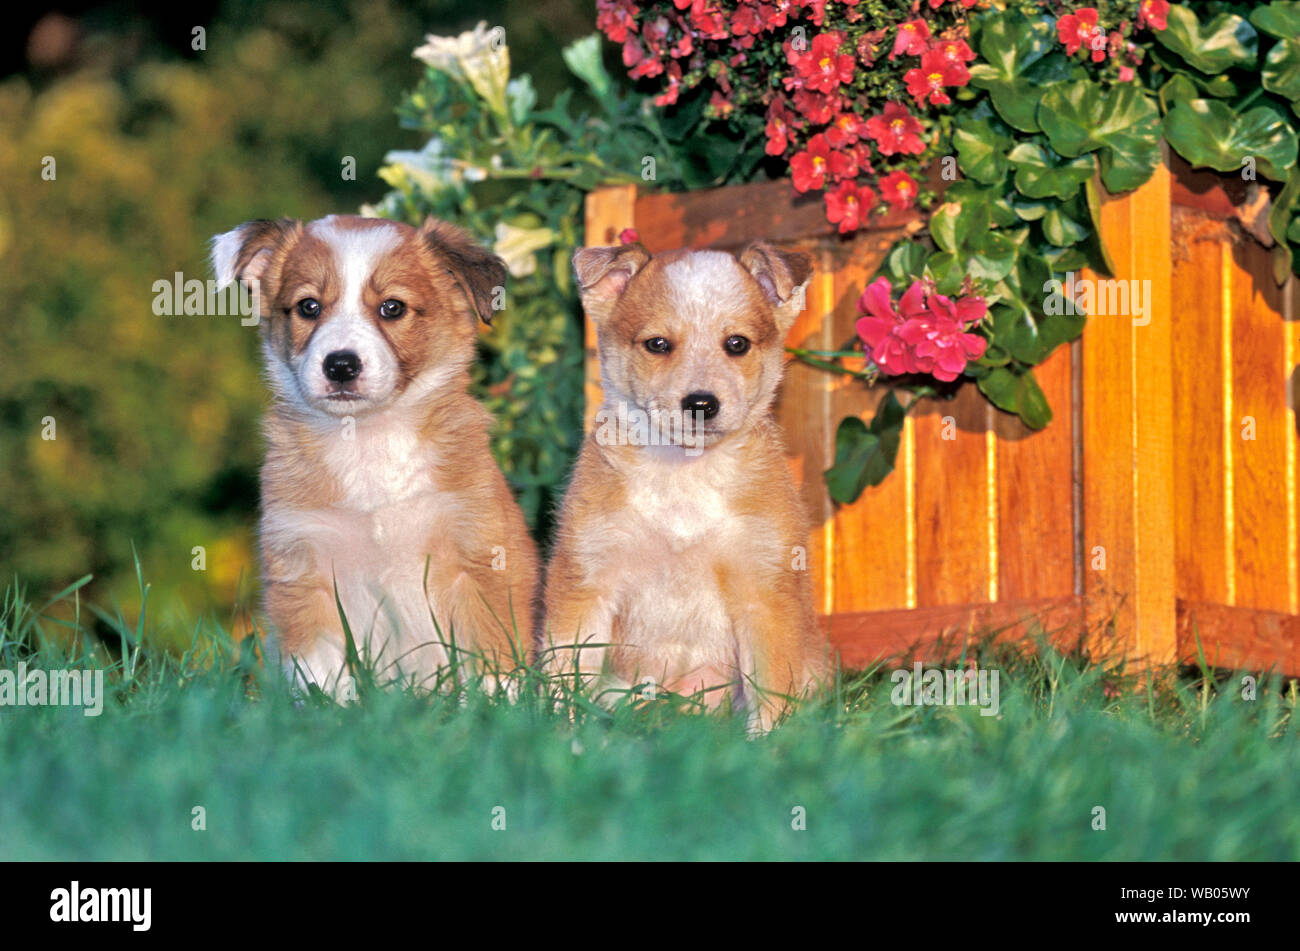 Zwei Border Collie Welpen sitzen im Gras bei Blumenopf|Two Border Collie puppies together in grass by flowerpot Stock Photo